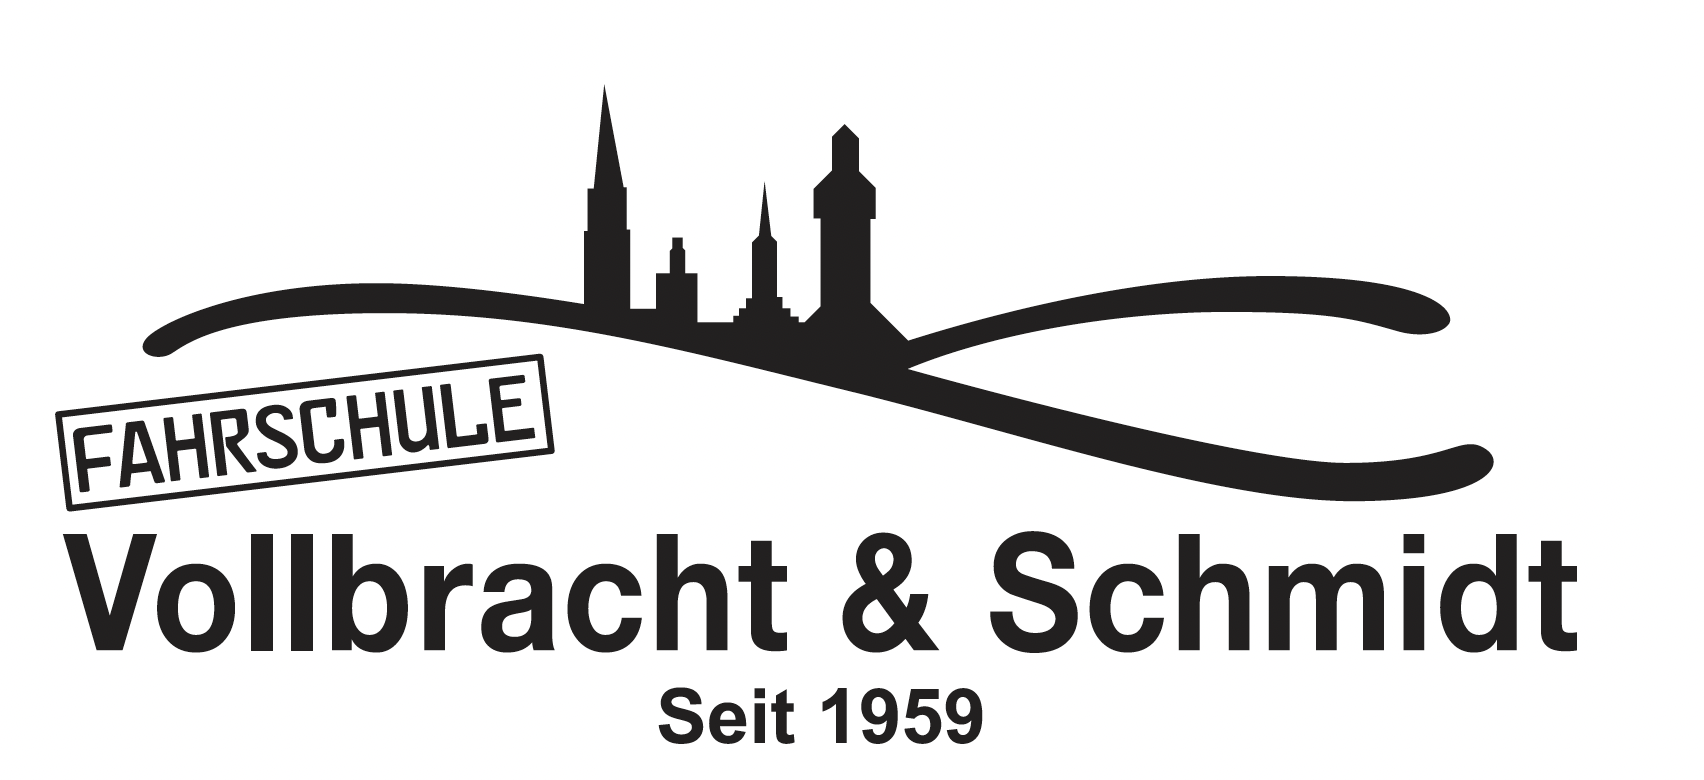 Fahrschule Vollbracht & Schmidt - Logo